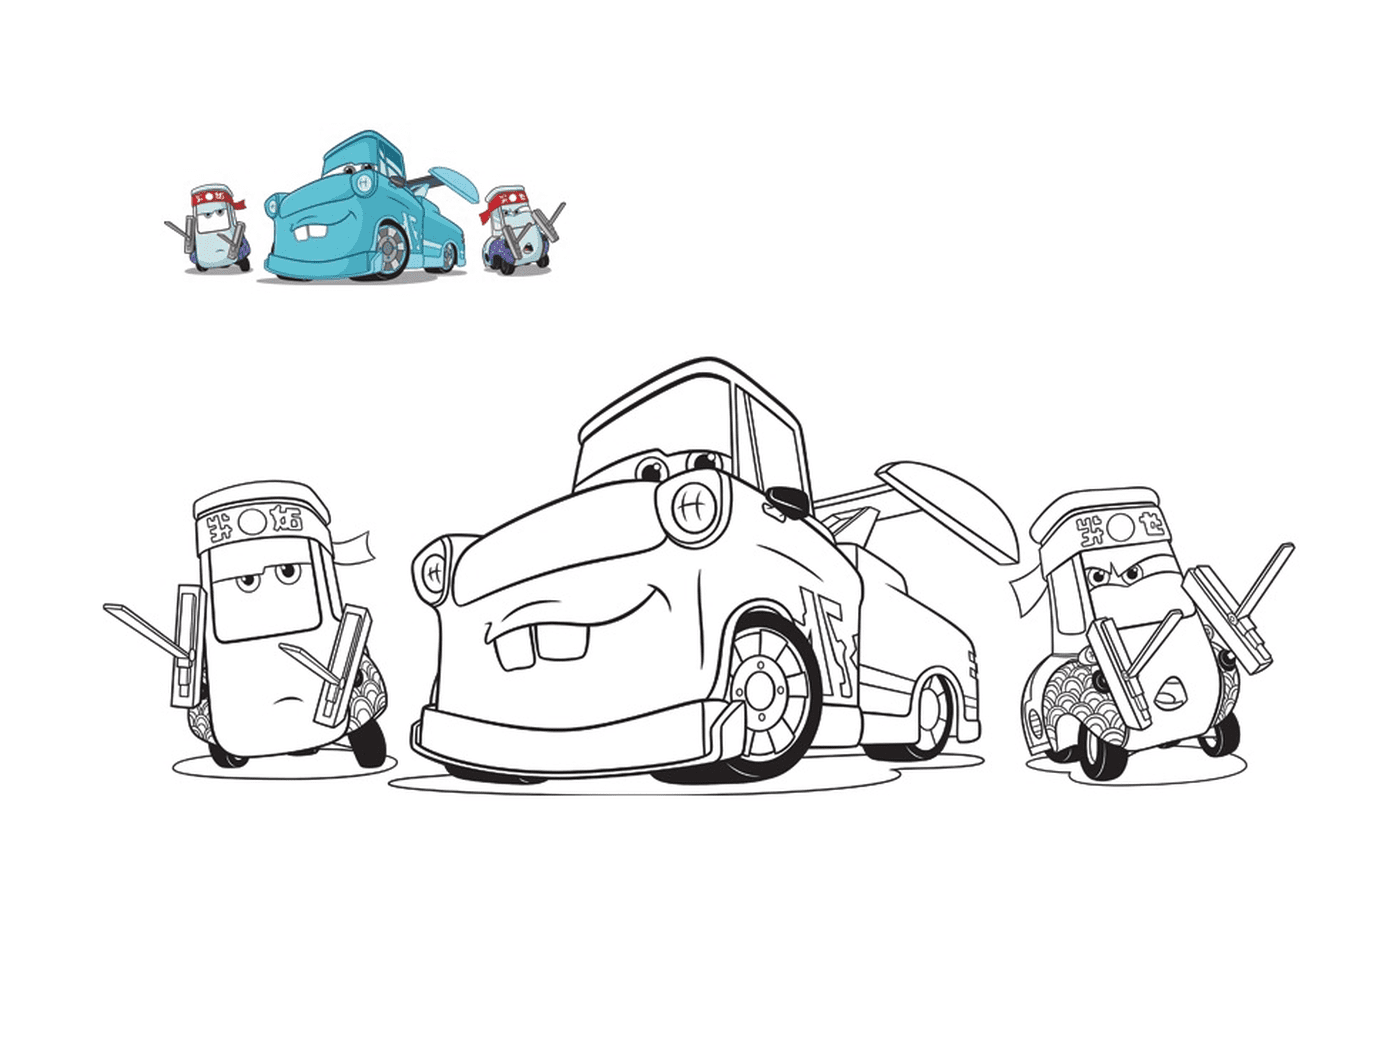  سيارات 3، غيدو وأصدقائه، شاحنة سحب ميكانيكية، خط سيارة مع سيارة على الأرض 